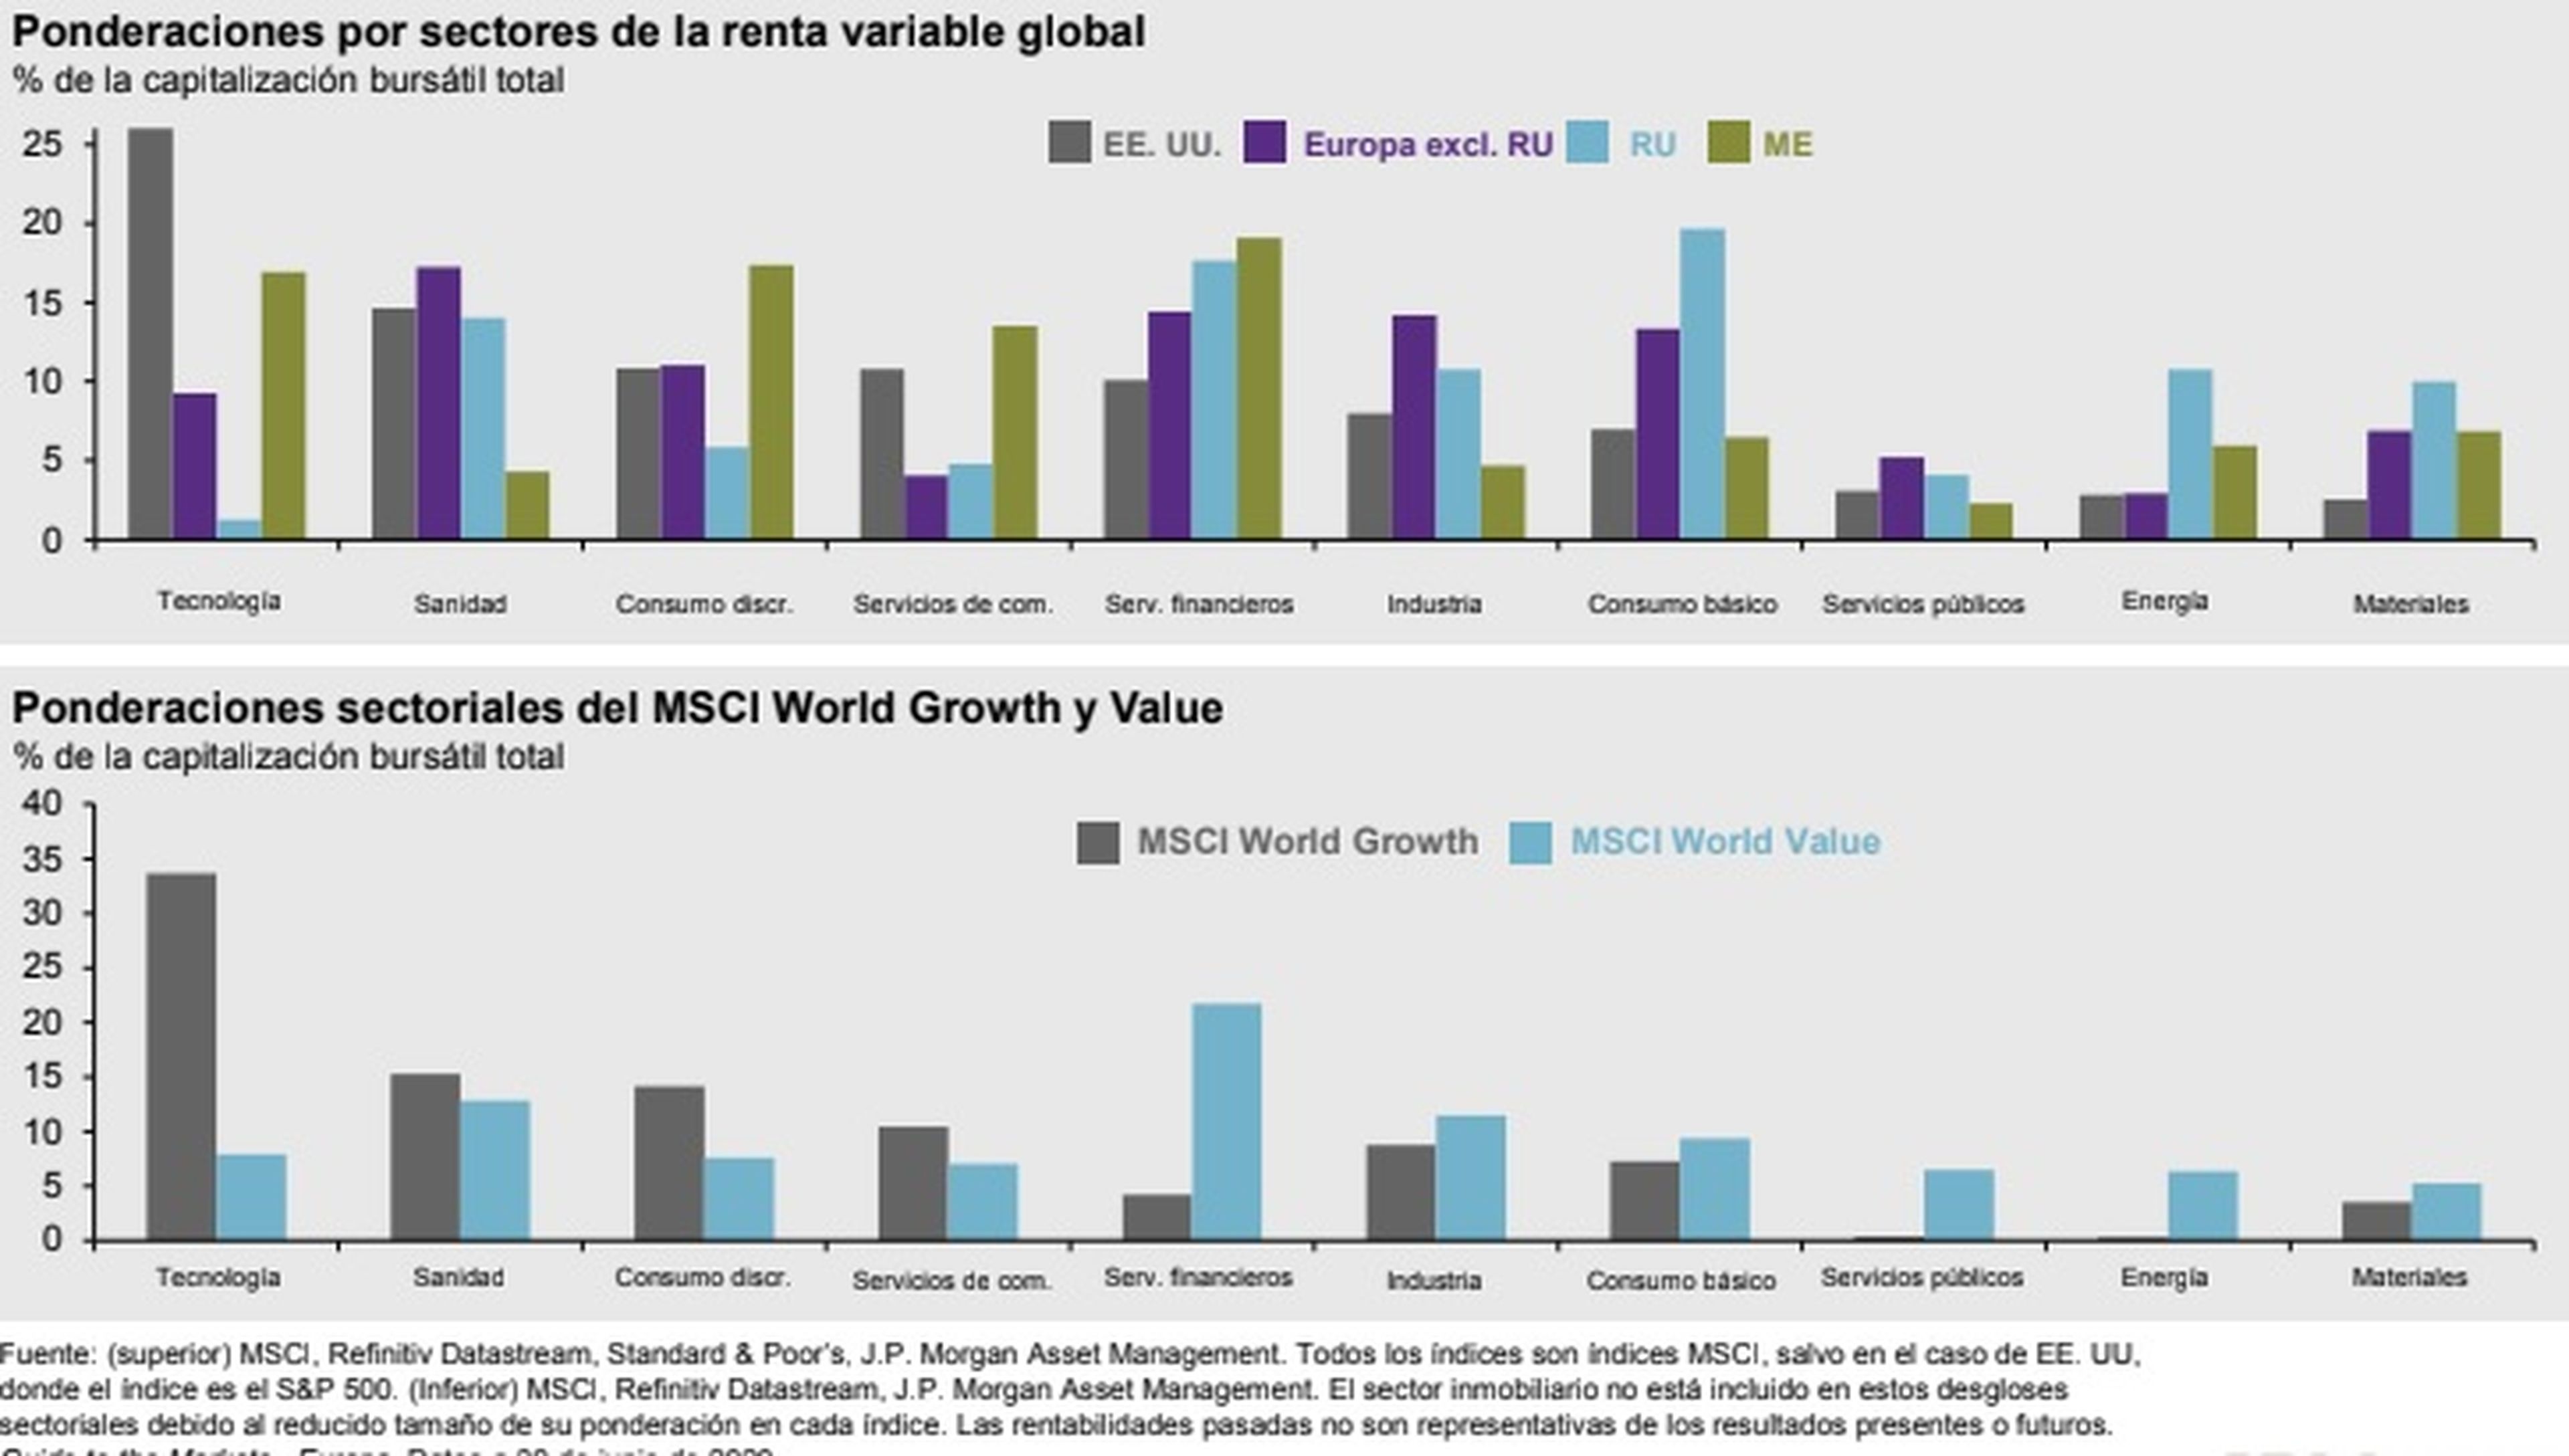 Ponderaciones de la renta variable global.